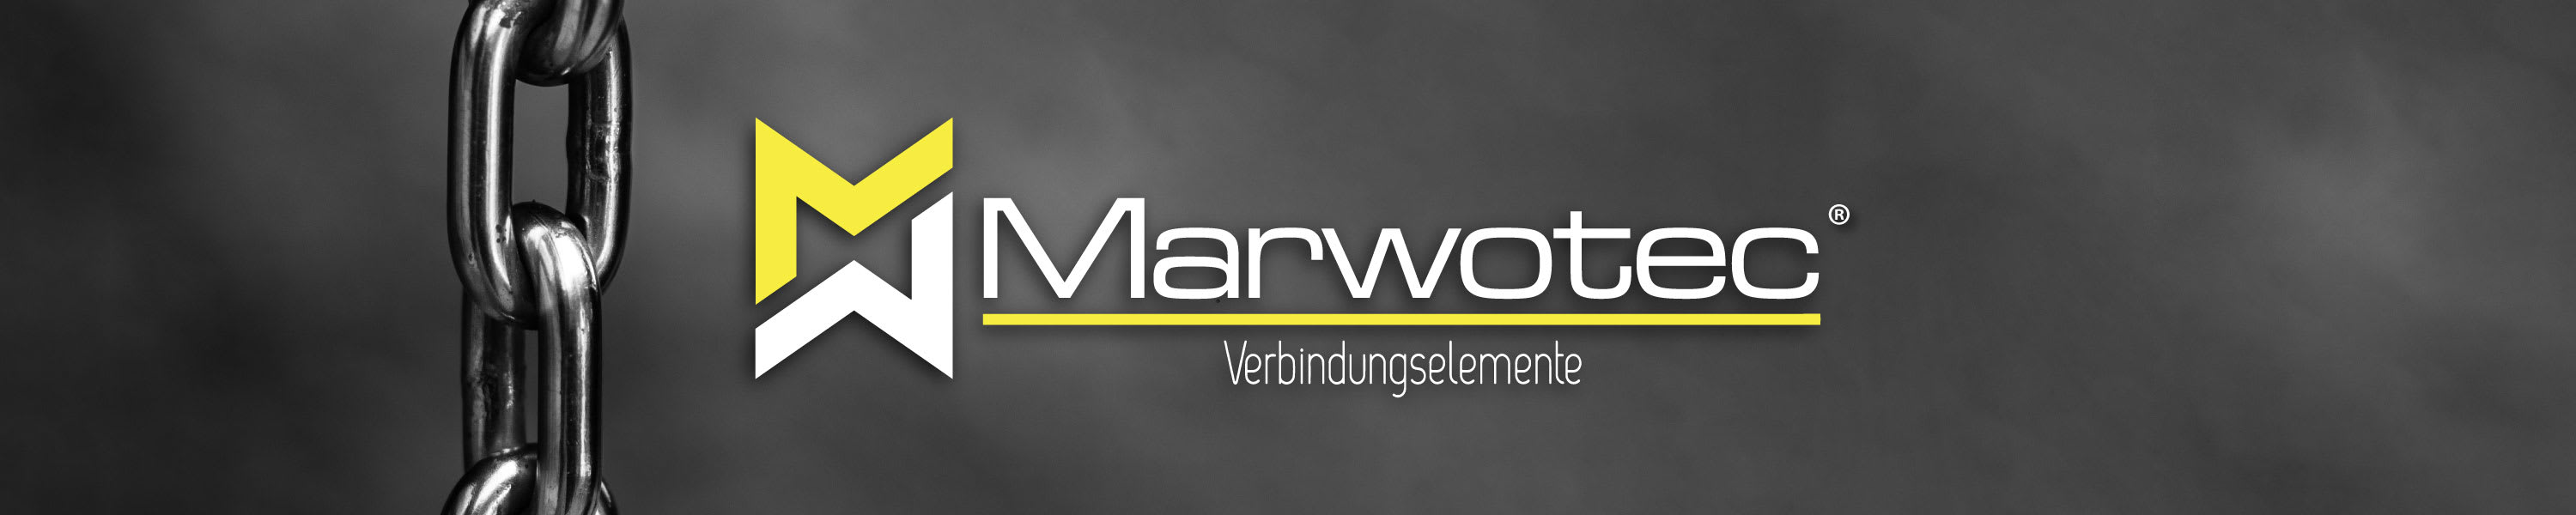 Marwotec - Ihr Shop für Verbindungselemente aus Krefeld